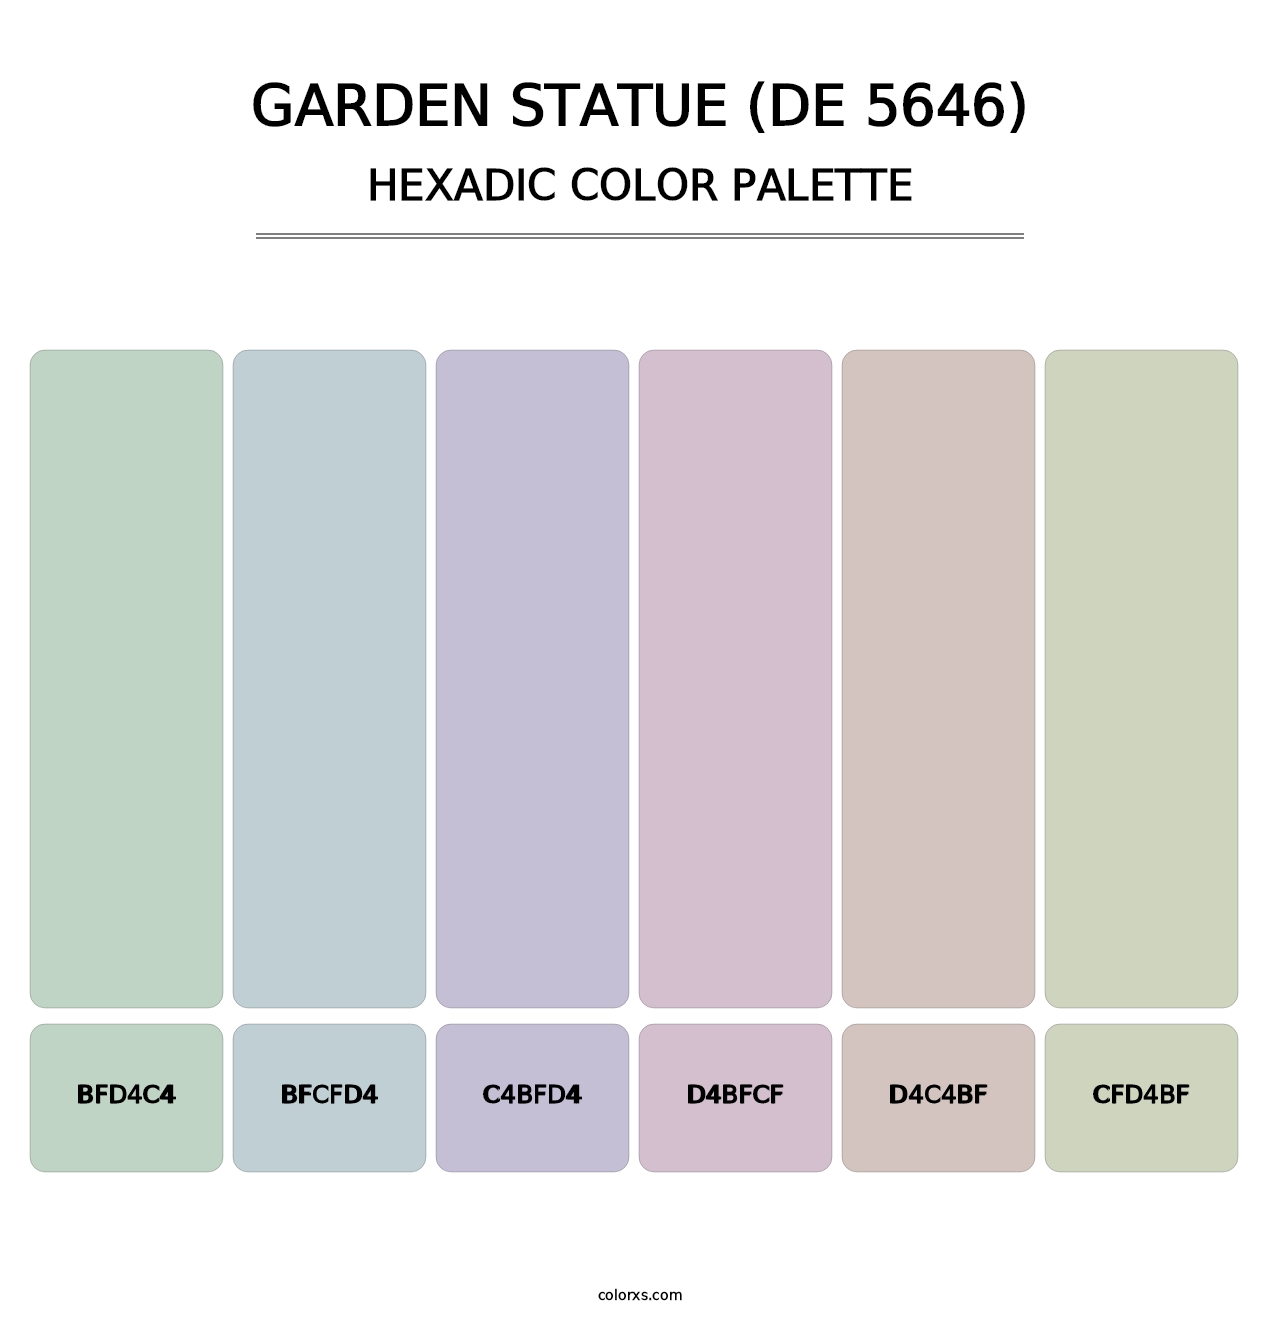 Garden Statue (DE 5646) - Hexadic Color Palette